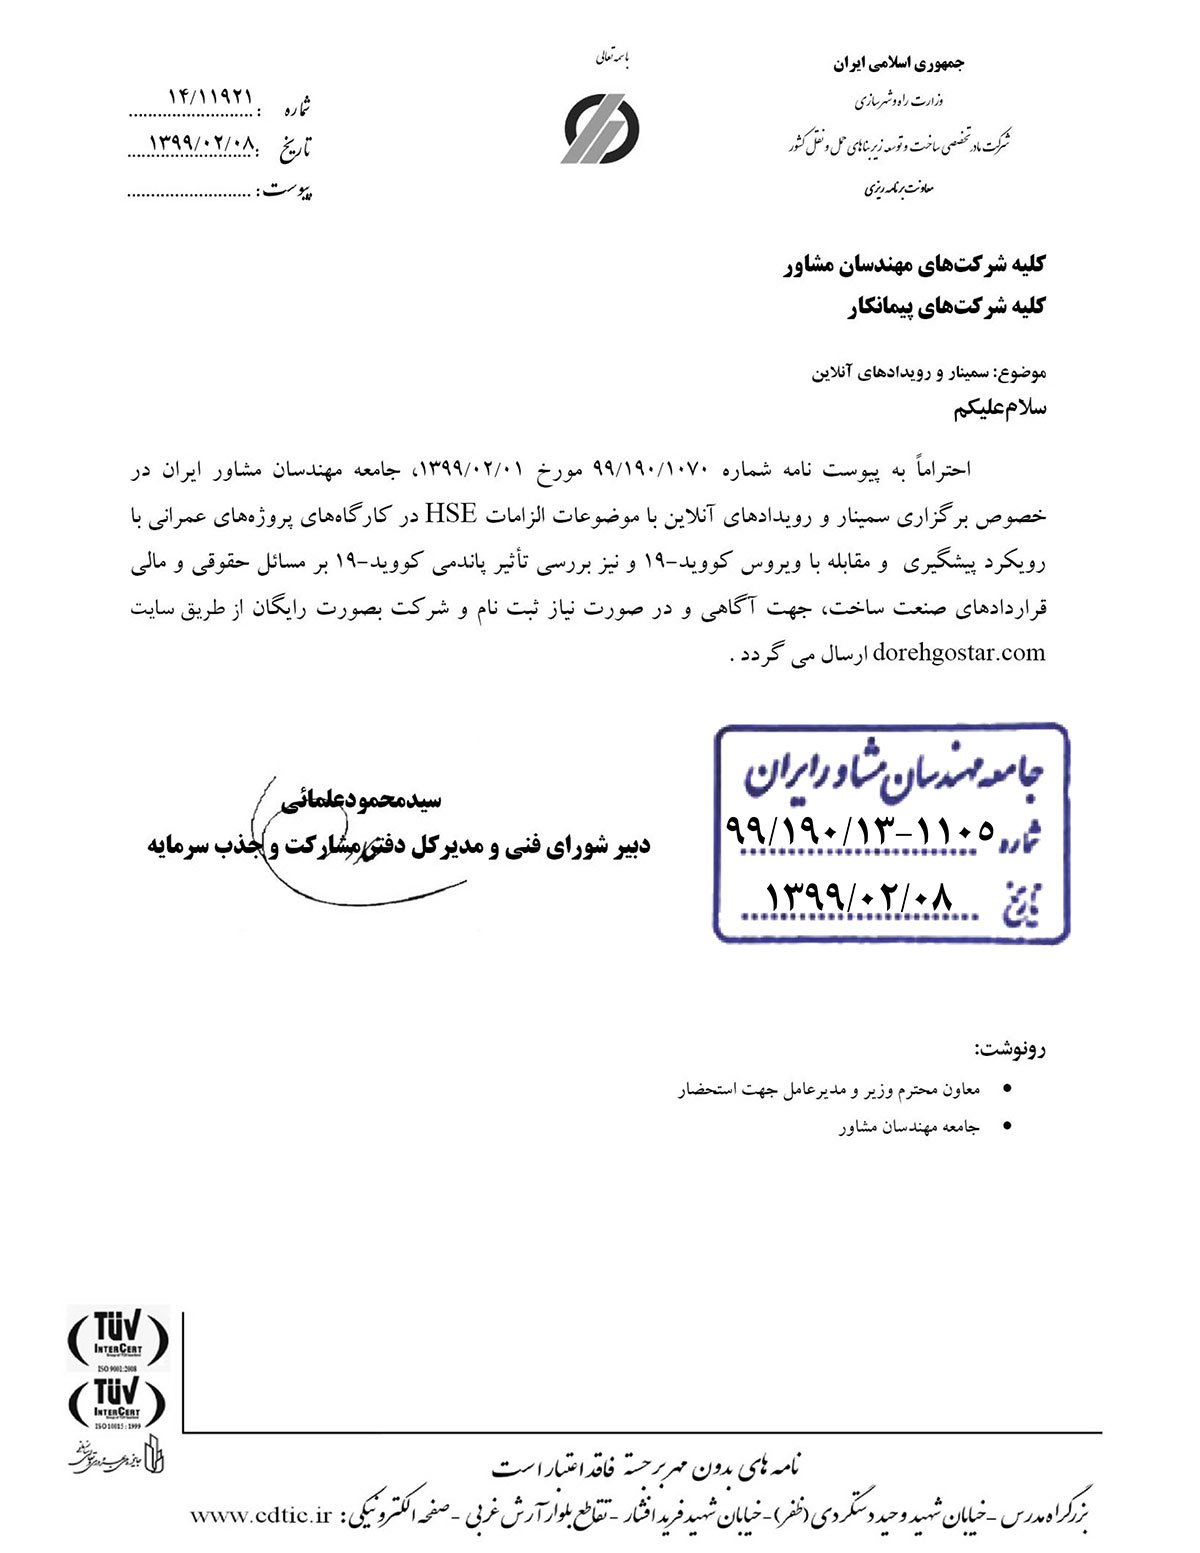 نامه وزارت راه در خصوص سمینارها و رویدادهای آنلاین